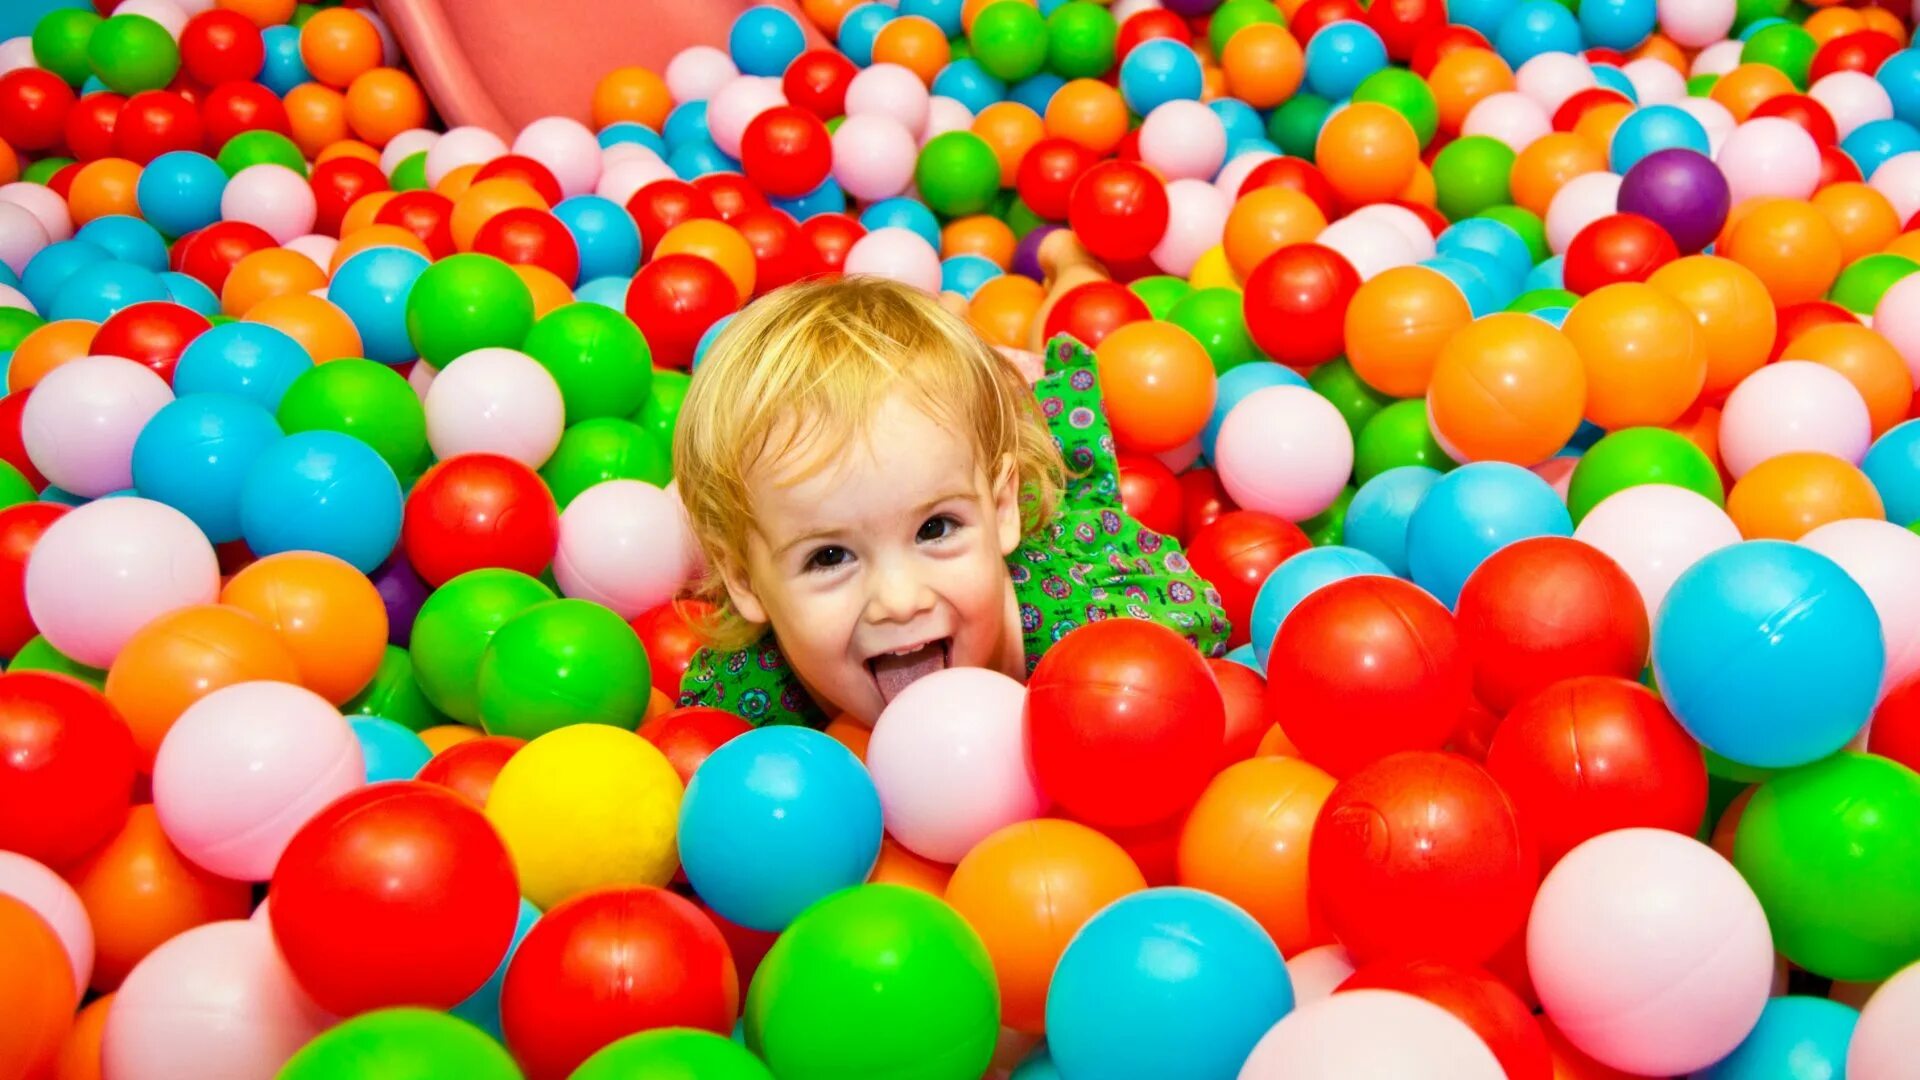 Бассейн с шариками для детей. Бассейн с шариками в игровой комнате. Бассейн с шарами детский. Разноцветные шарики в бассейне. Игра детская шары